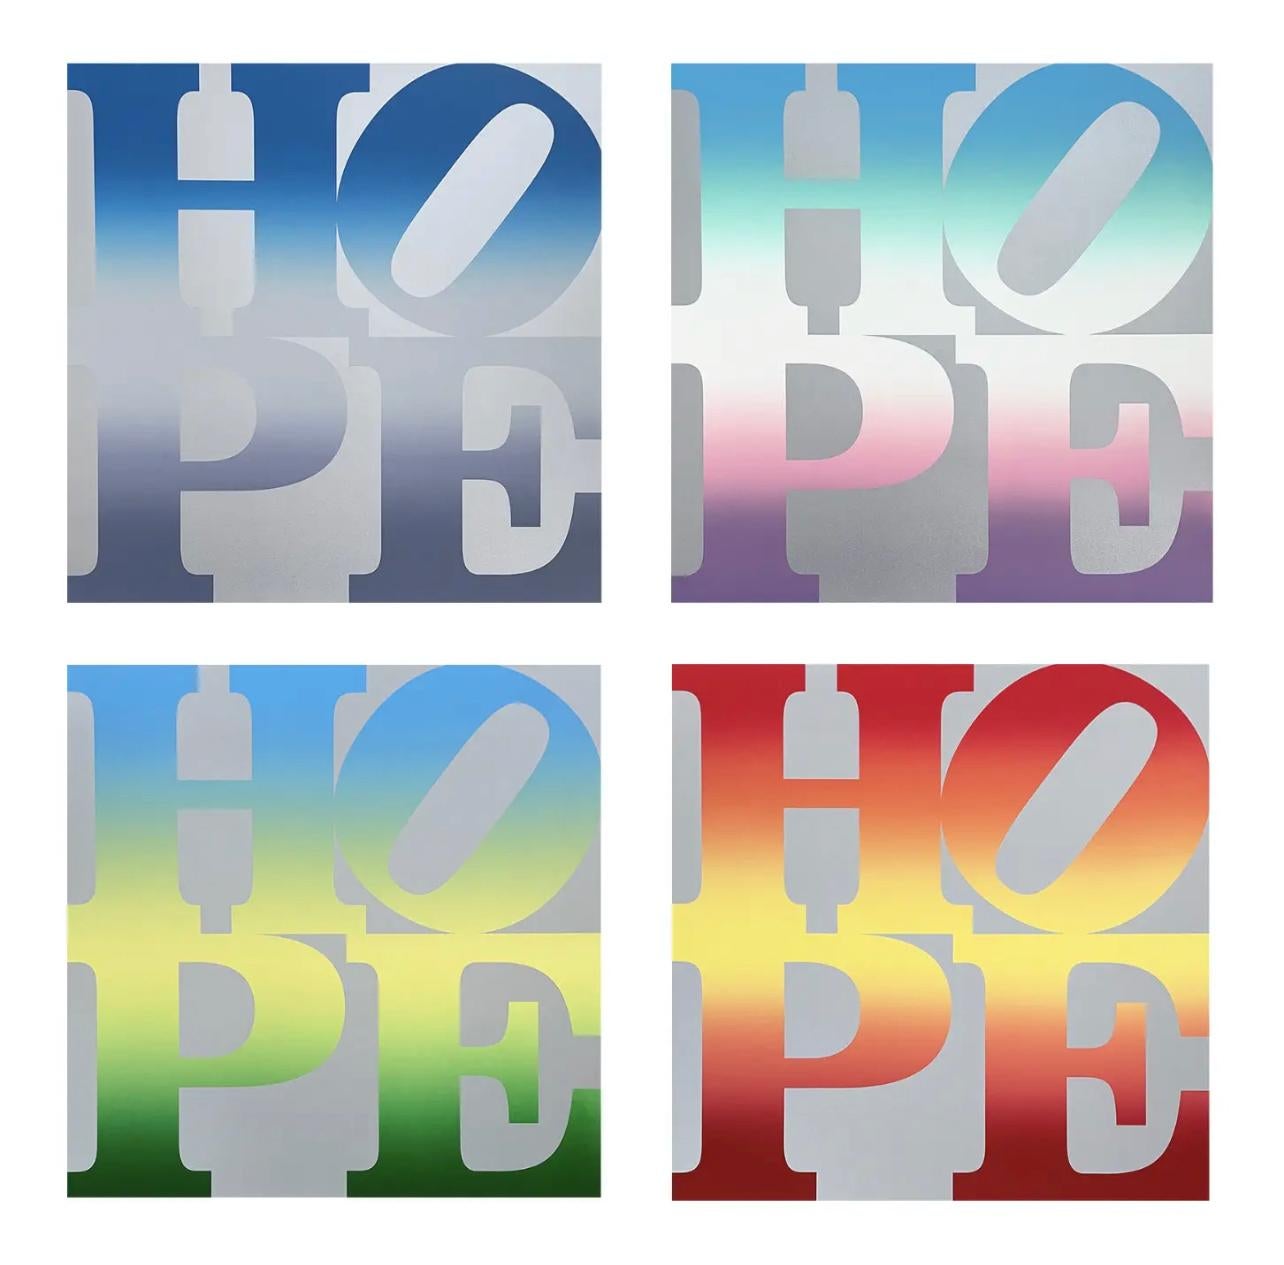 Quatre Saisons of HOPE (quatre œuvres d'art), Robert Indiana